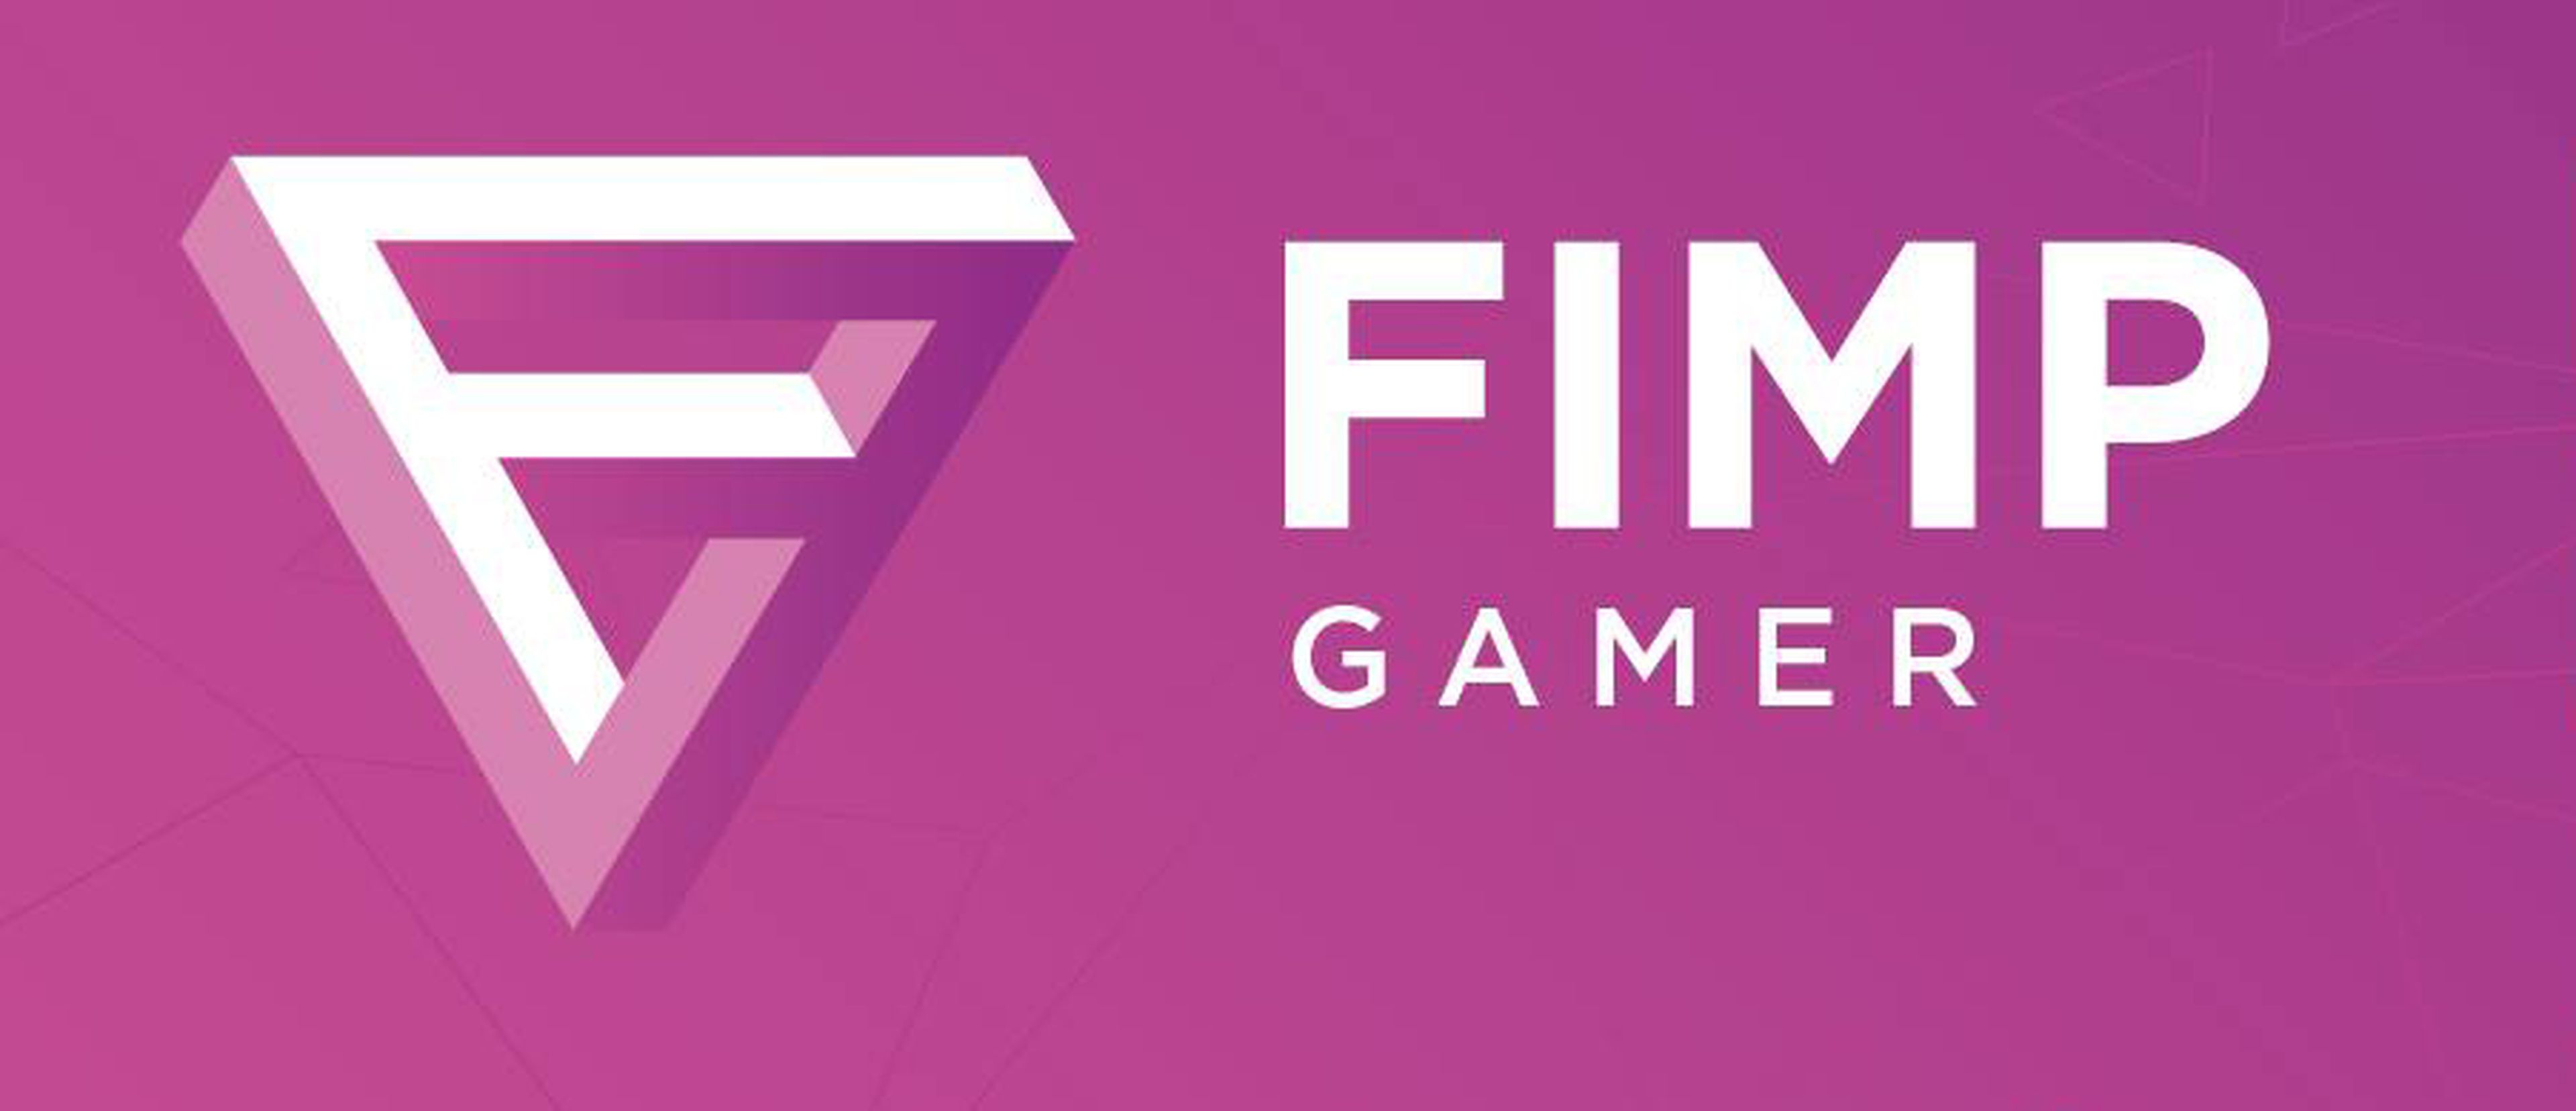 FIMP Gamer